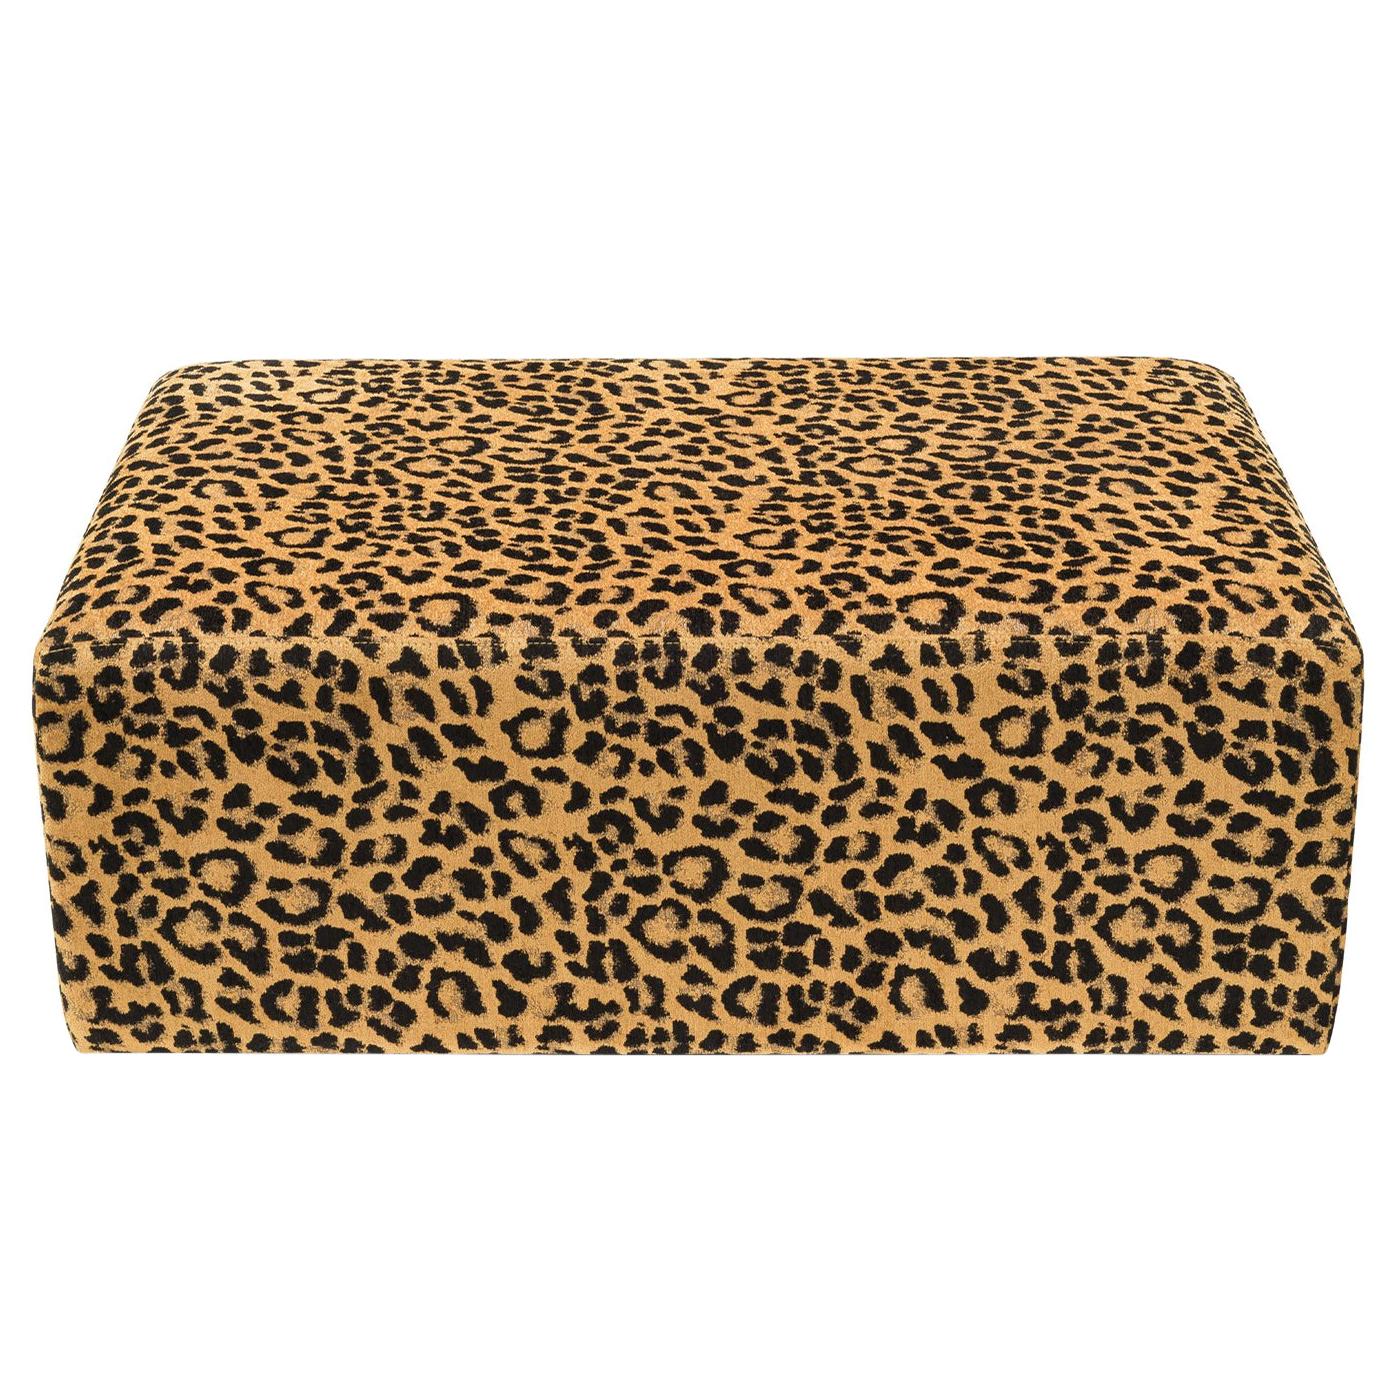 Leopard Pouf For Sale